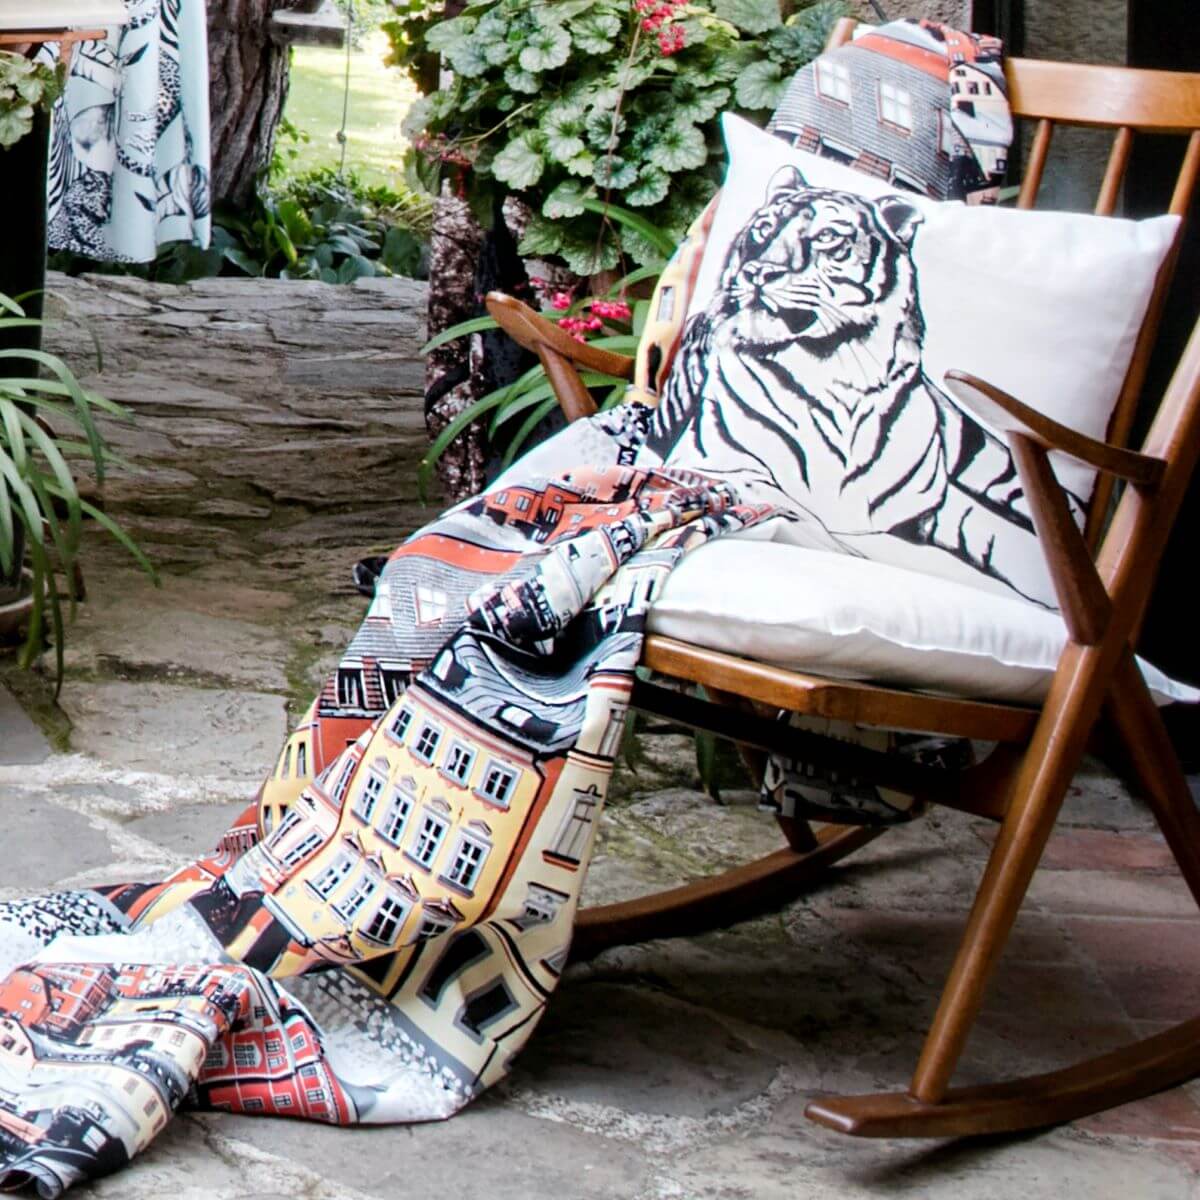 Poszewka dekoracyjna gepard i tygrys SIESTA. Poszewka bawełniana dwustronna na poduszkę z czarną postacią tygrysa leżąca na drewnianym bujanym fotelu